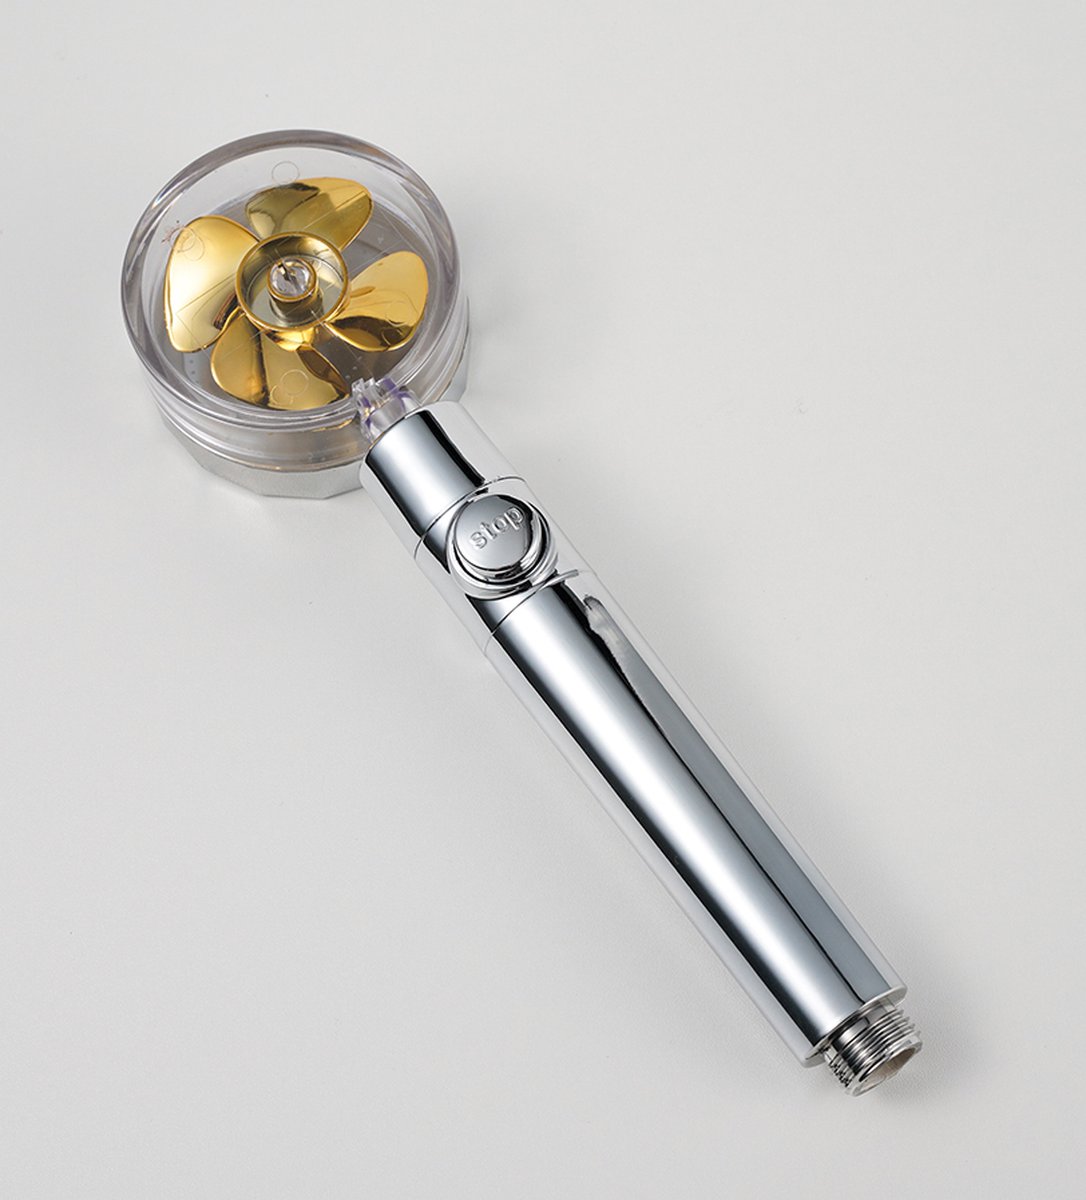 Waterbesparende douchekop - Handdouche met hoge druk - Regendouche - Turbo fan - goud/zilver